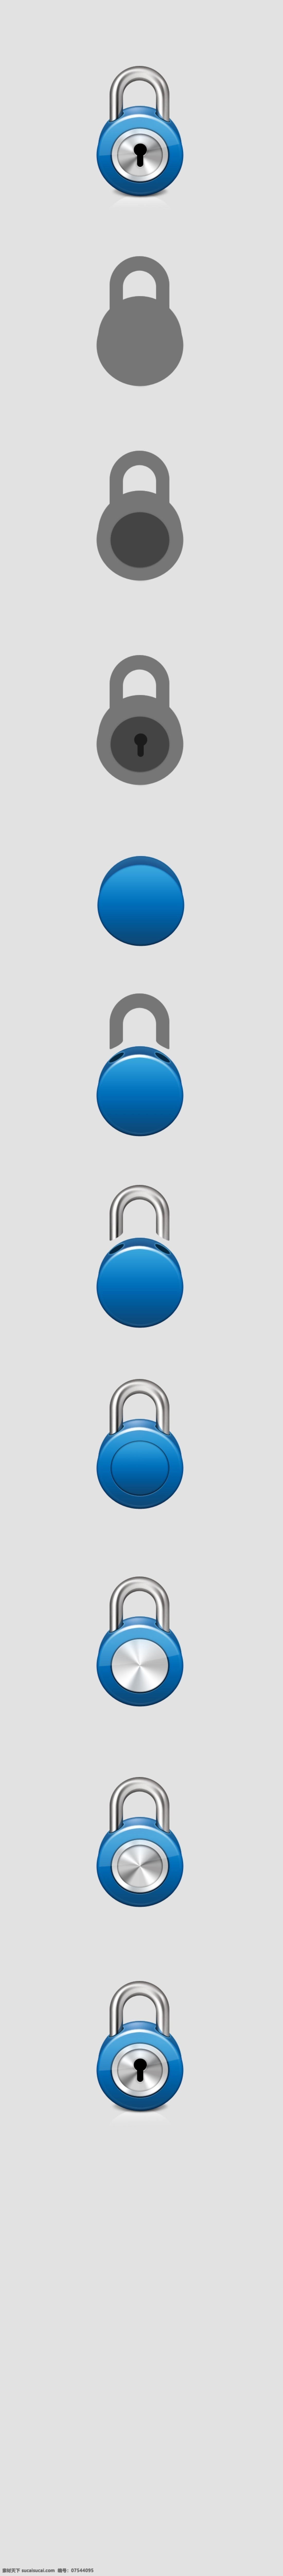 3d 锁 图标 icon 网页 psd源文件